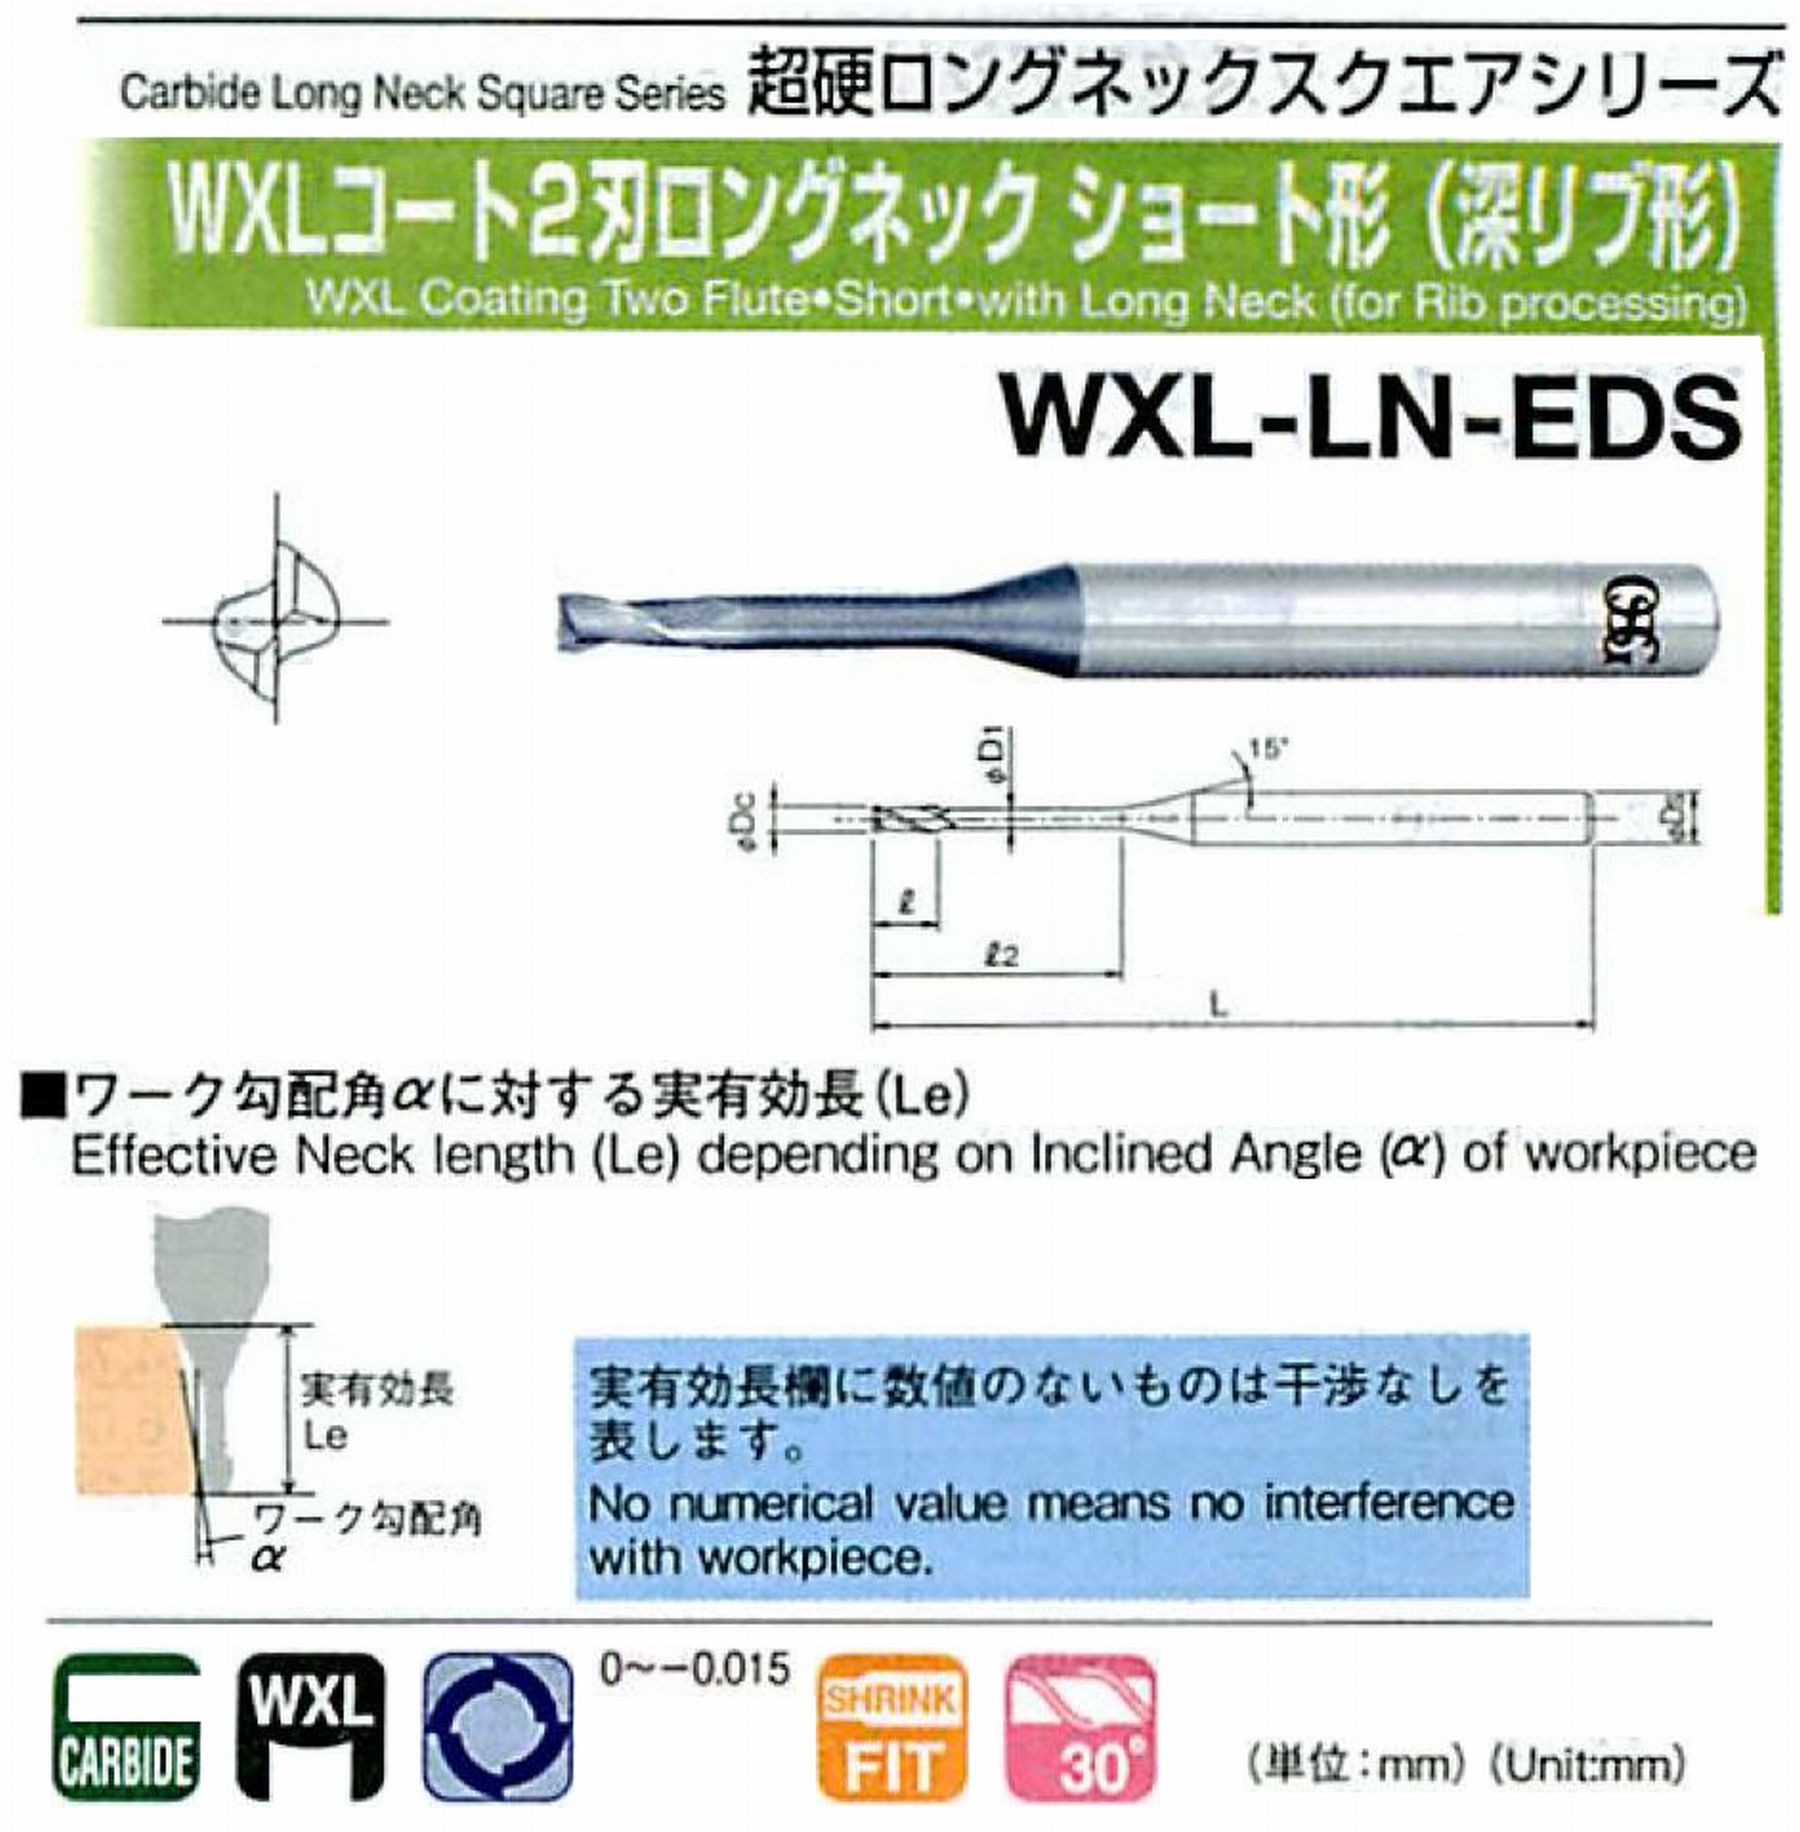 オーエスジー/OSG WXLコート2刃 ロングネックショート形(深リブ形) WXL-LN-EDS 外径×首下長0.2×0.5 全長45 刃長0.3 シャンク径4mm 首径0.18